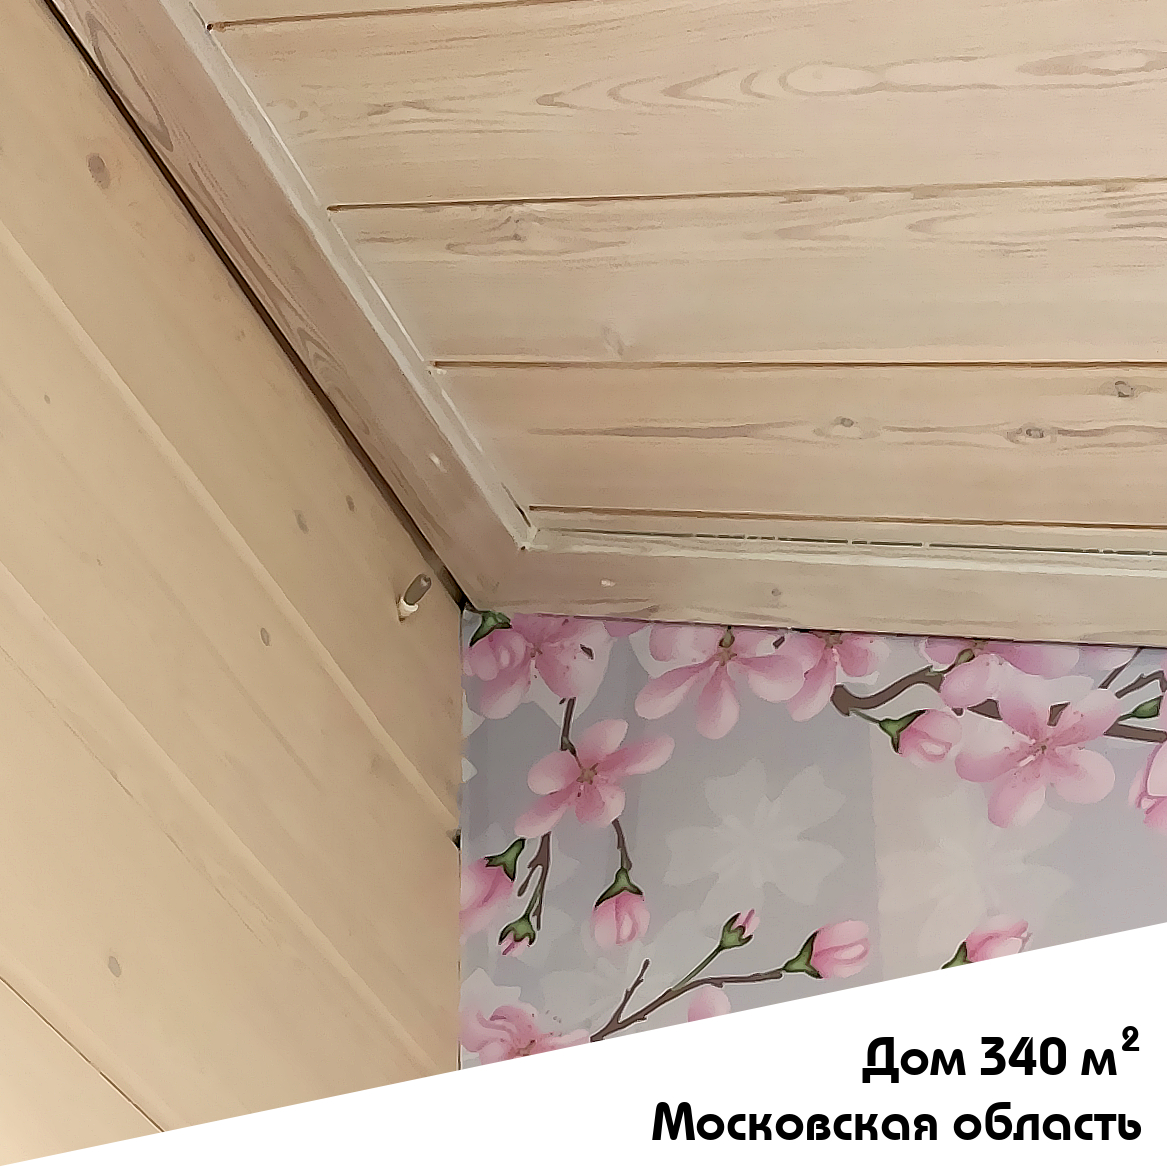 Выполненный объект. Система увлажнения для частного дома 340 м2 в Московской области